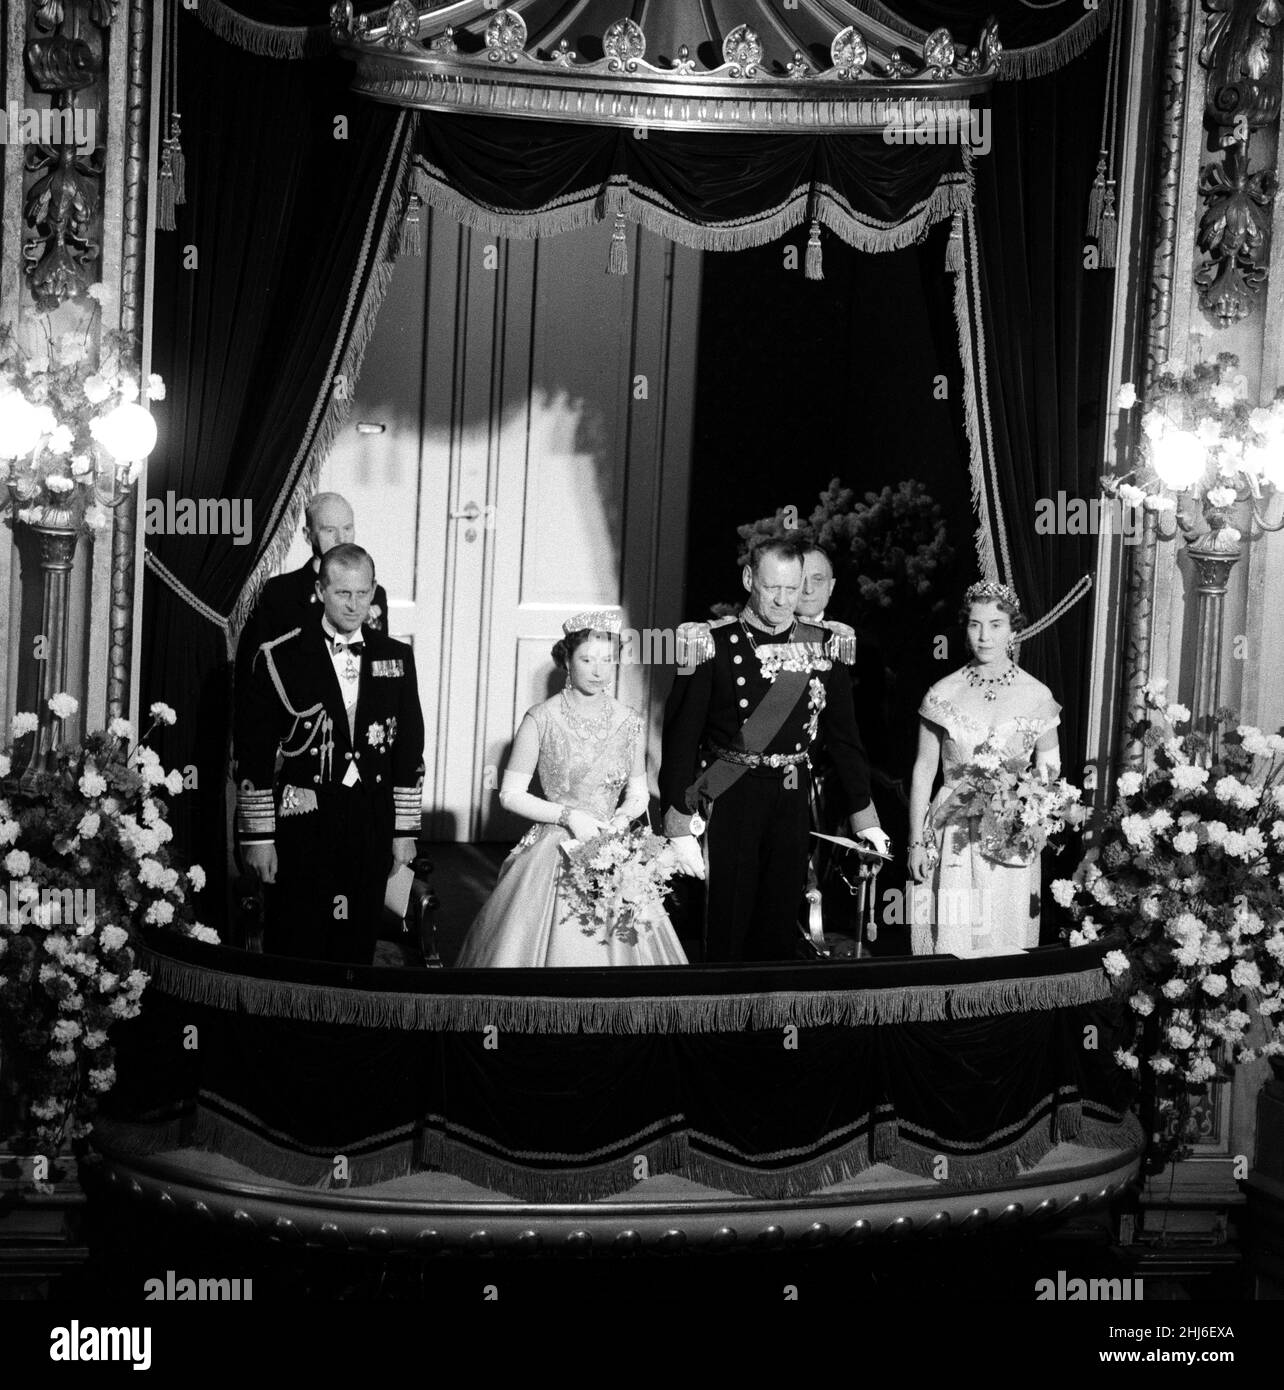 Königin Elizabeth II. Und Prinz Philip, Herzog von Edinburgh, besuchen Dänemark. Im Bild: Prinz Philip, Königin Elisabeth II., König Frederik und Königin Ingrid von Dänemark in ihrer Box bei der Galavorstellung im Königlichen Theater in Kopenhagen. 23rd Mai 1957. Stockfoto